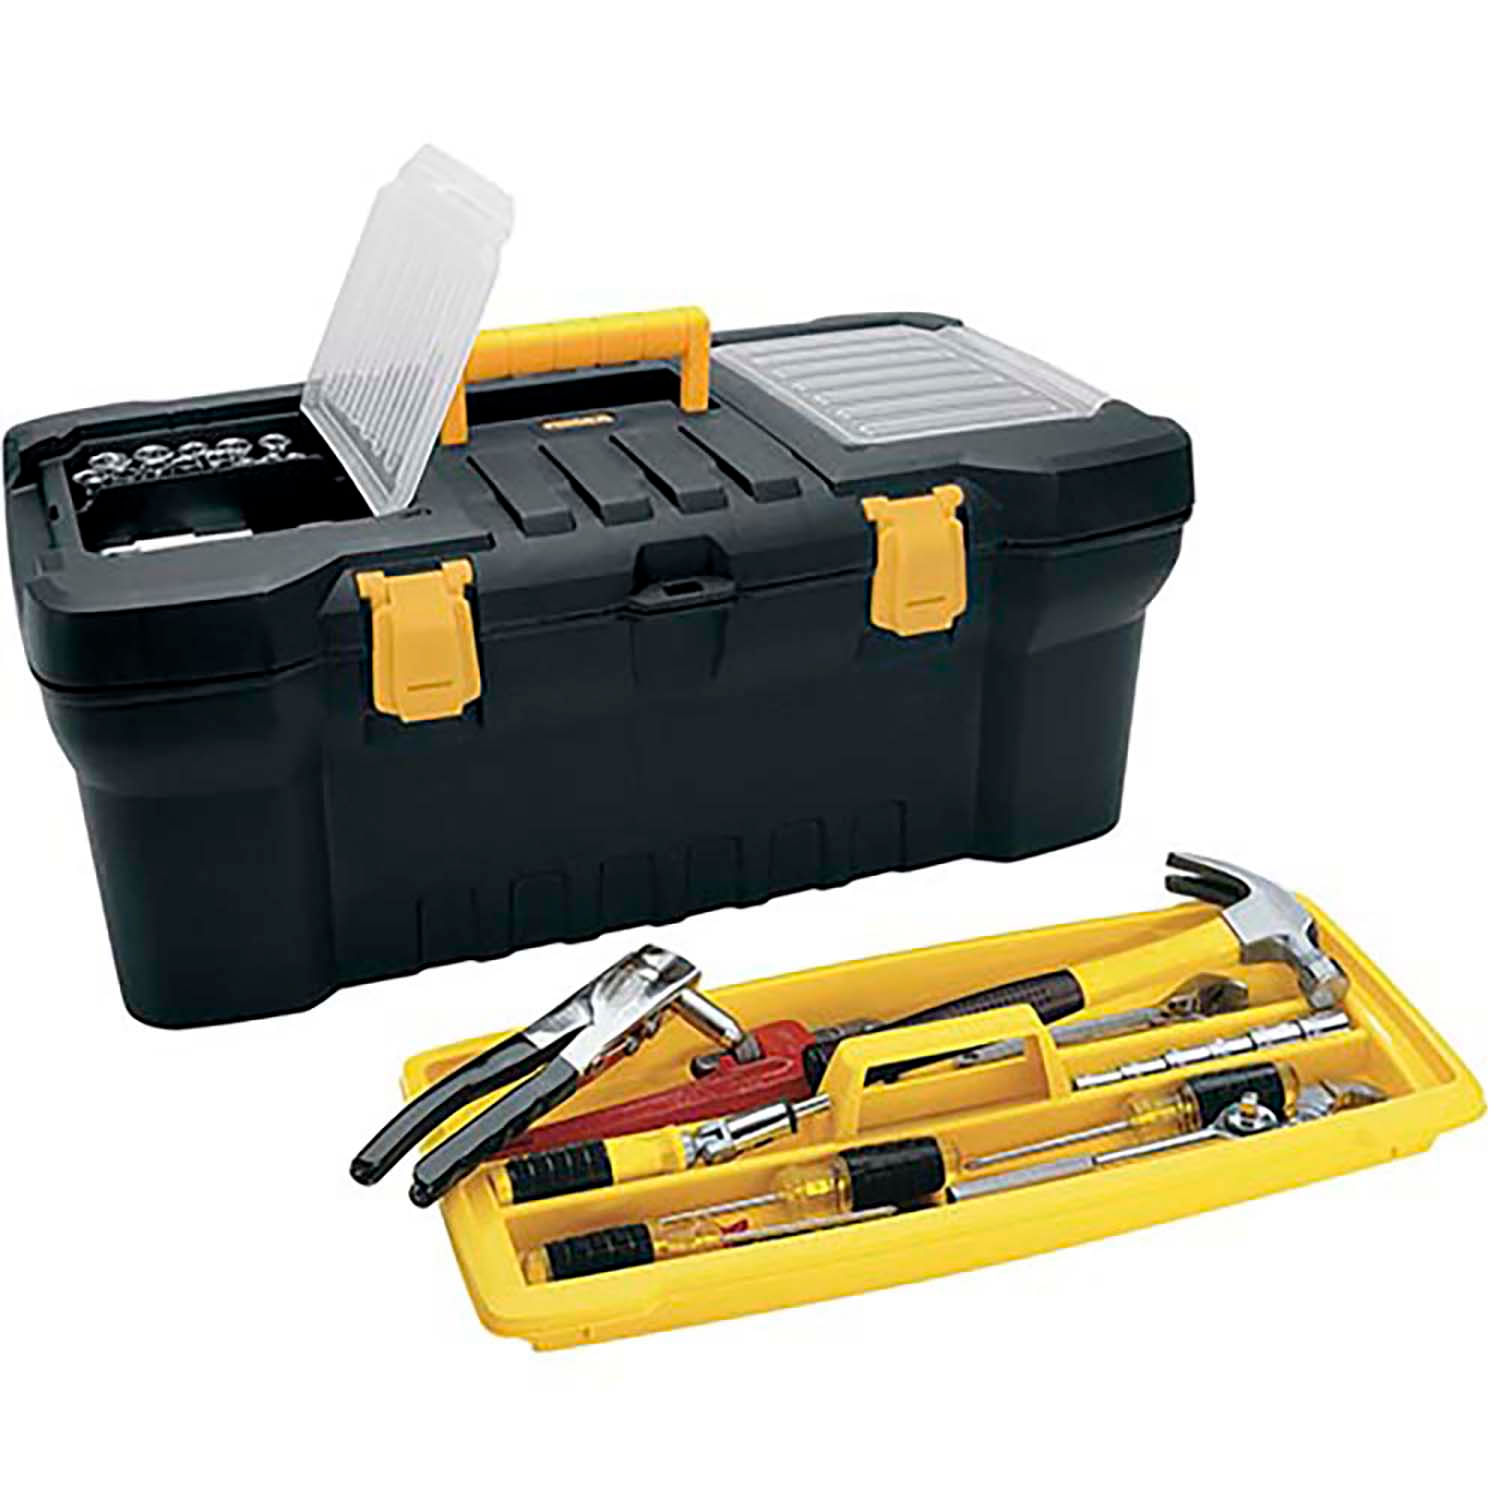 Caja de herramientas de 24 pulgadas con 2 compartimentos superiores,  bandeja desmontable y ganchos metálicos de seguridad 1U